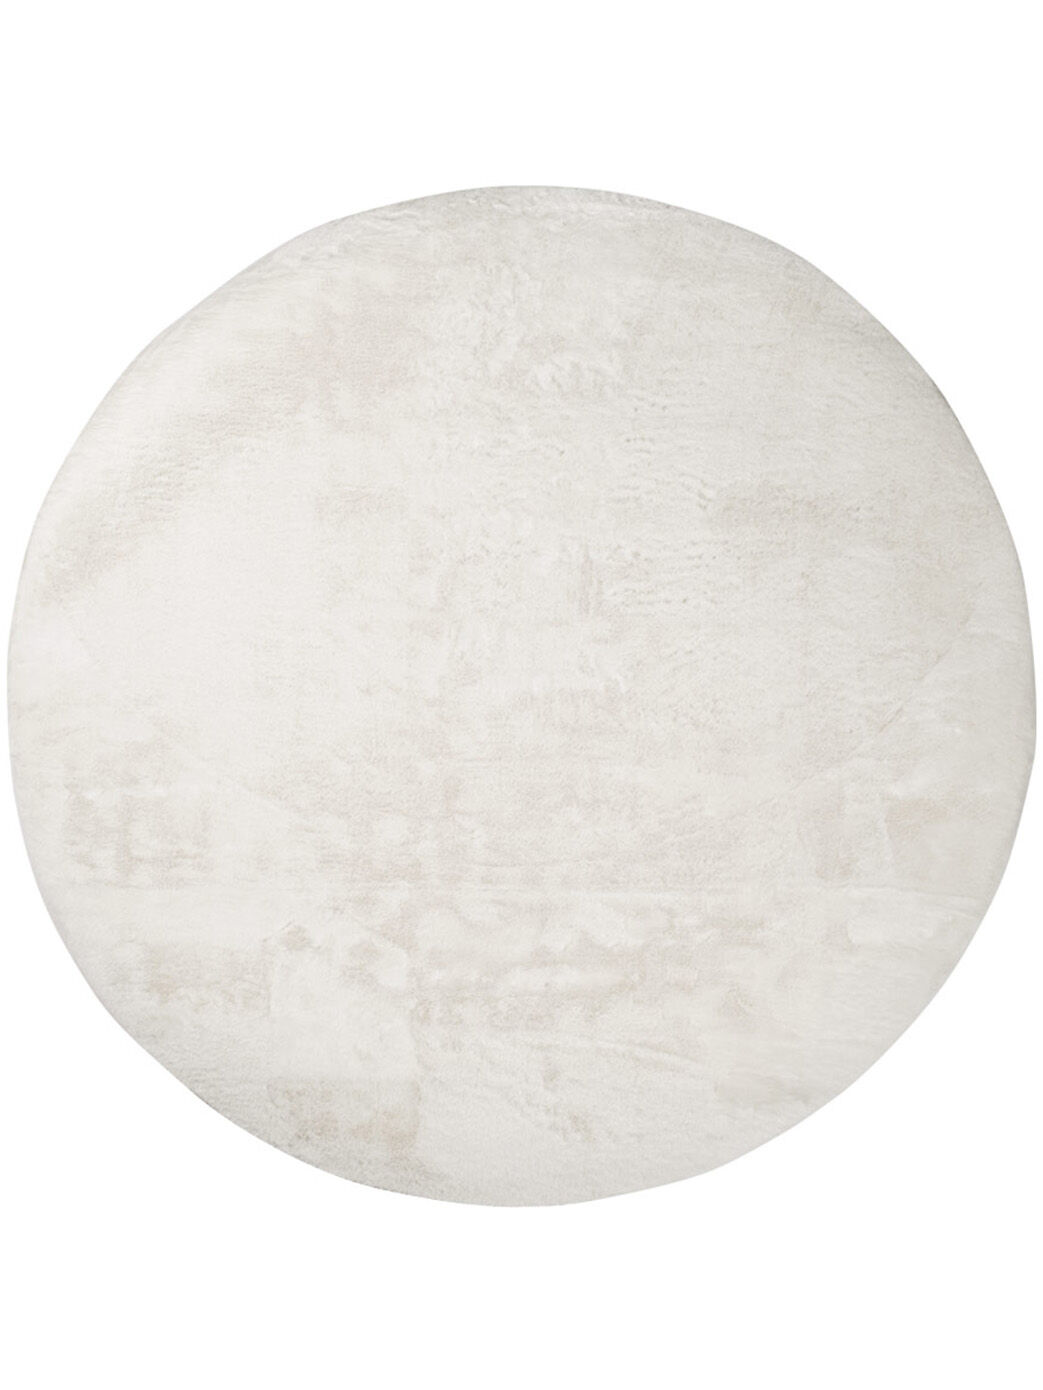 Flauschiger Teppich Mona 114 Weiß Rund